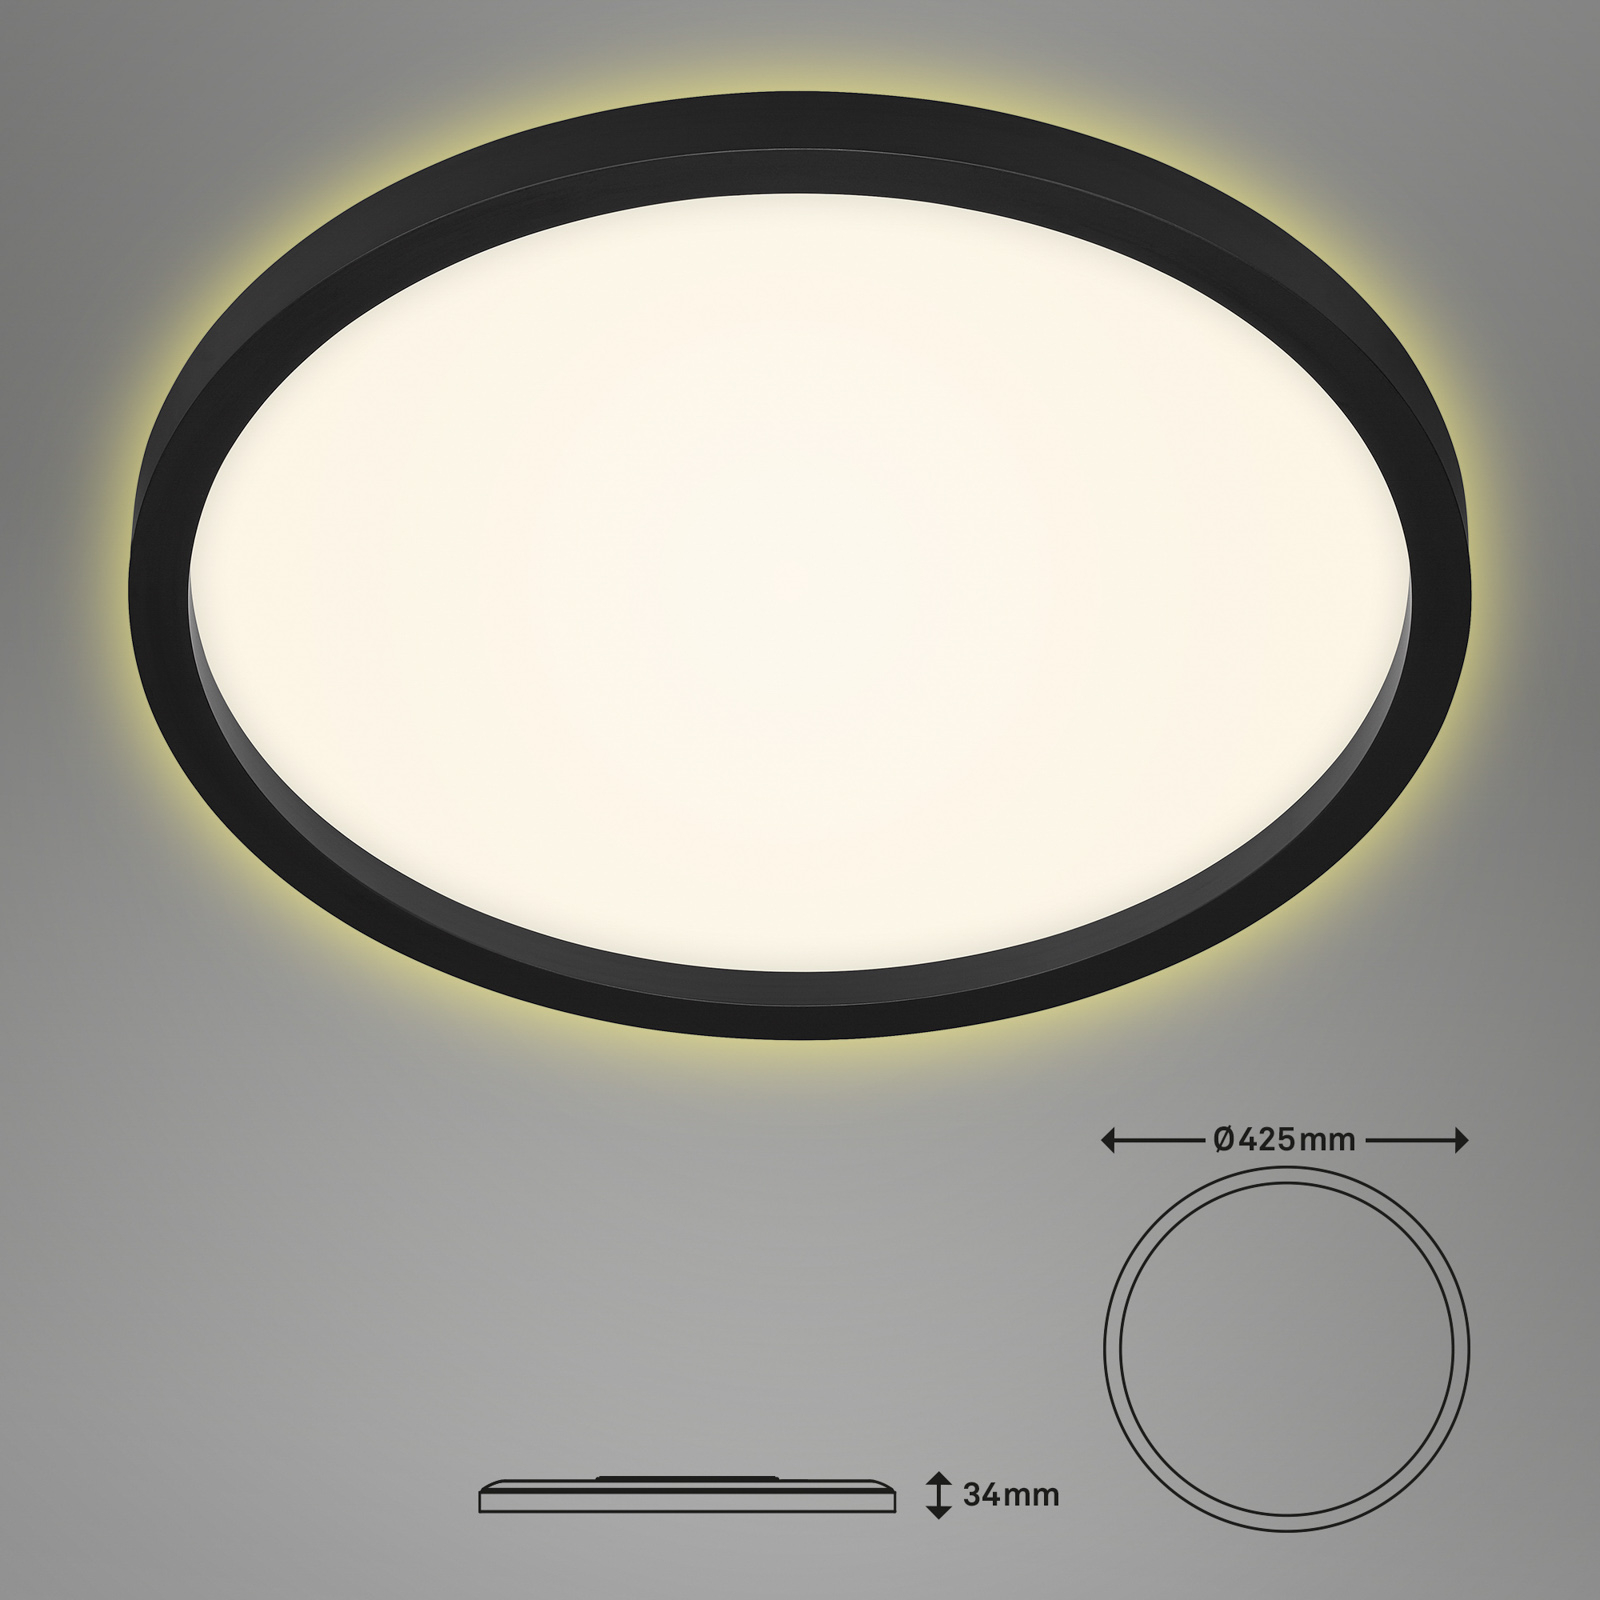 LED-Deckenlampe 7363, Ø 42 cm, schwarz